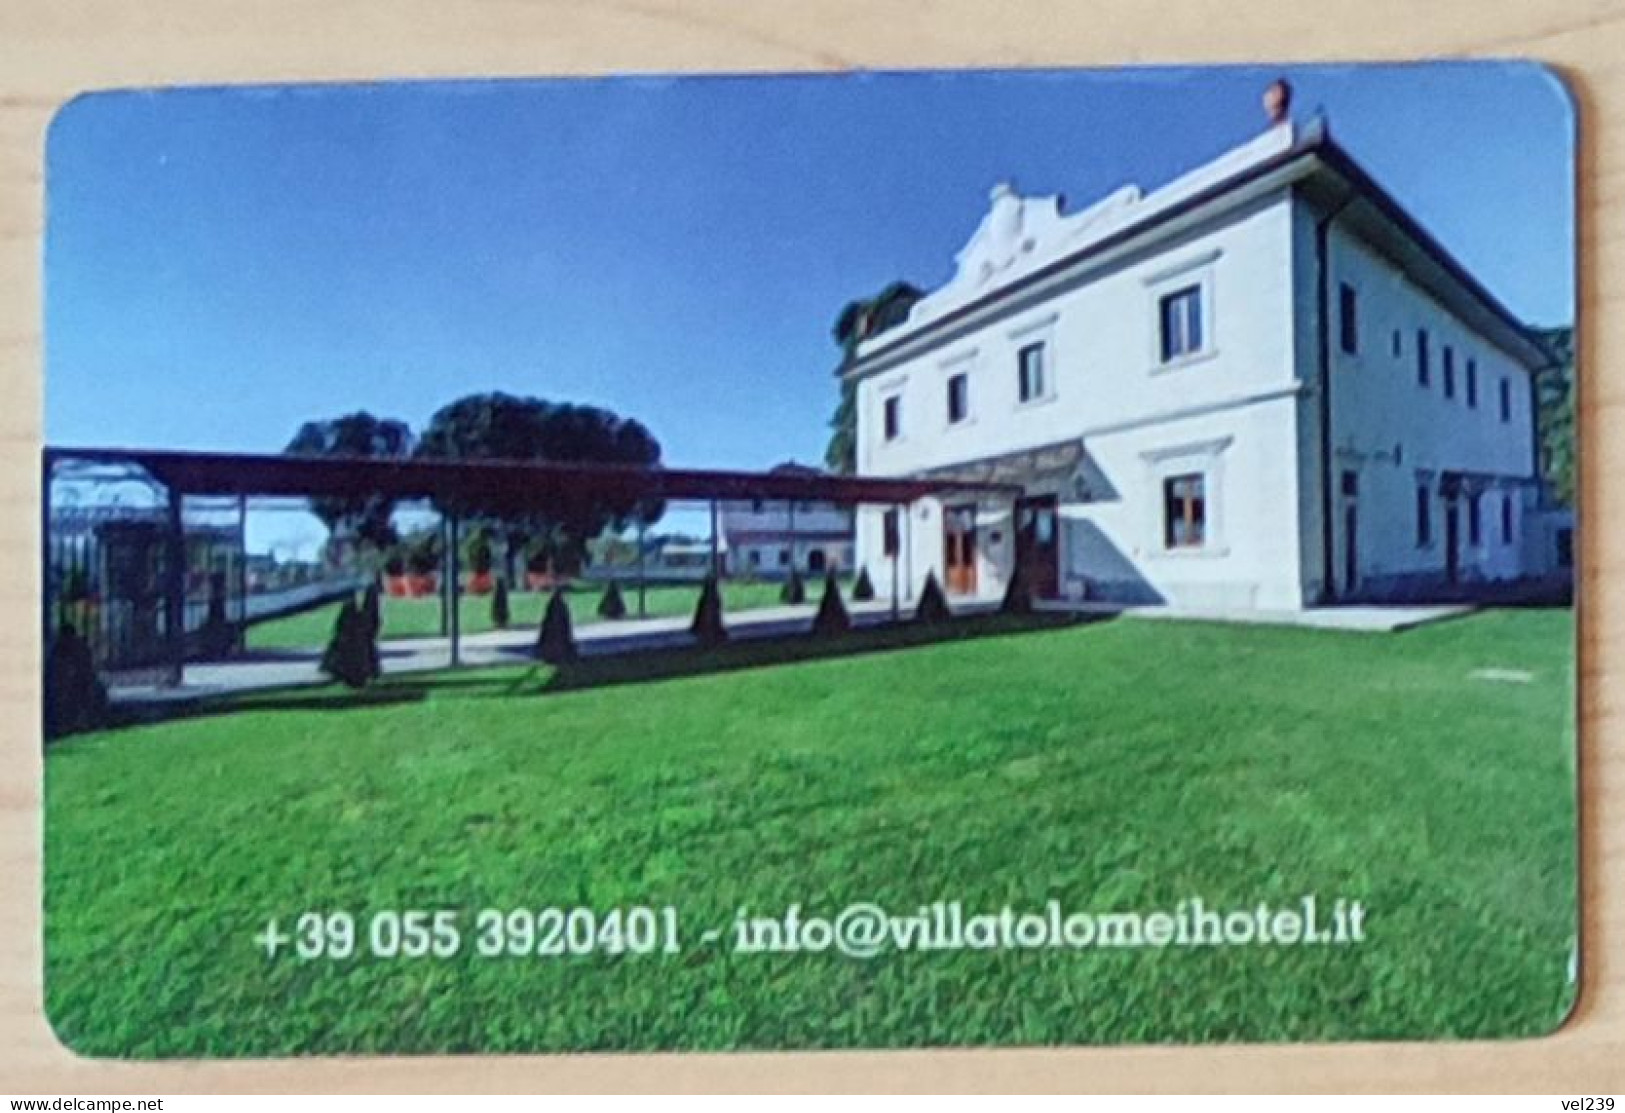 Italy. Villa Tolomei - Cartas De Hotels